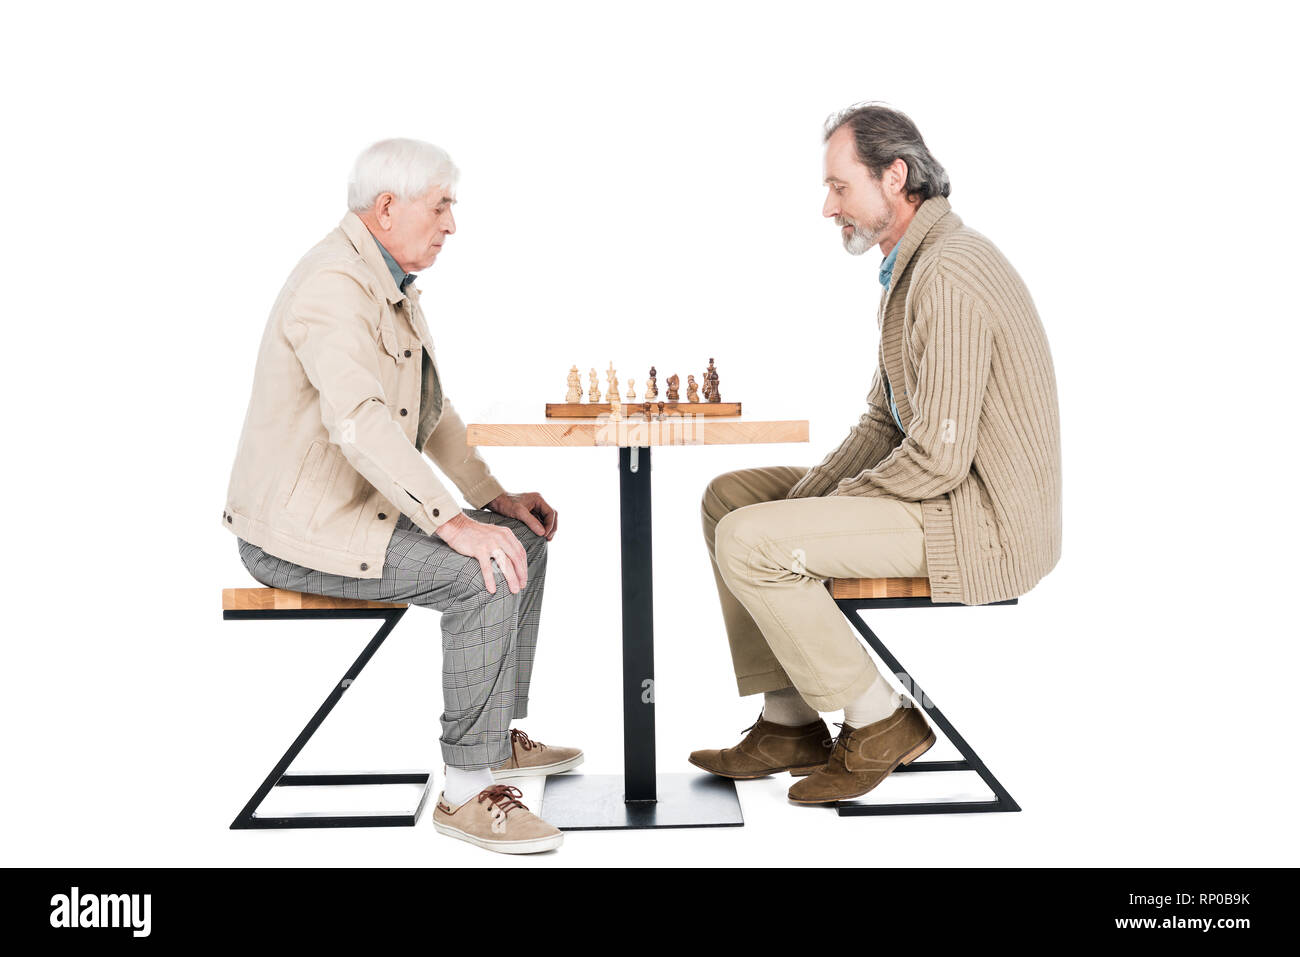 Обман возраста. Люди сидят за шахматным столом. Человек сидит и играет в шахматы. Фото сидя за шахматным столом. Старик йог сидит за шахматной доской.